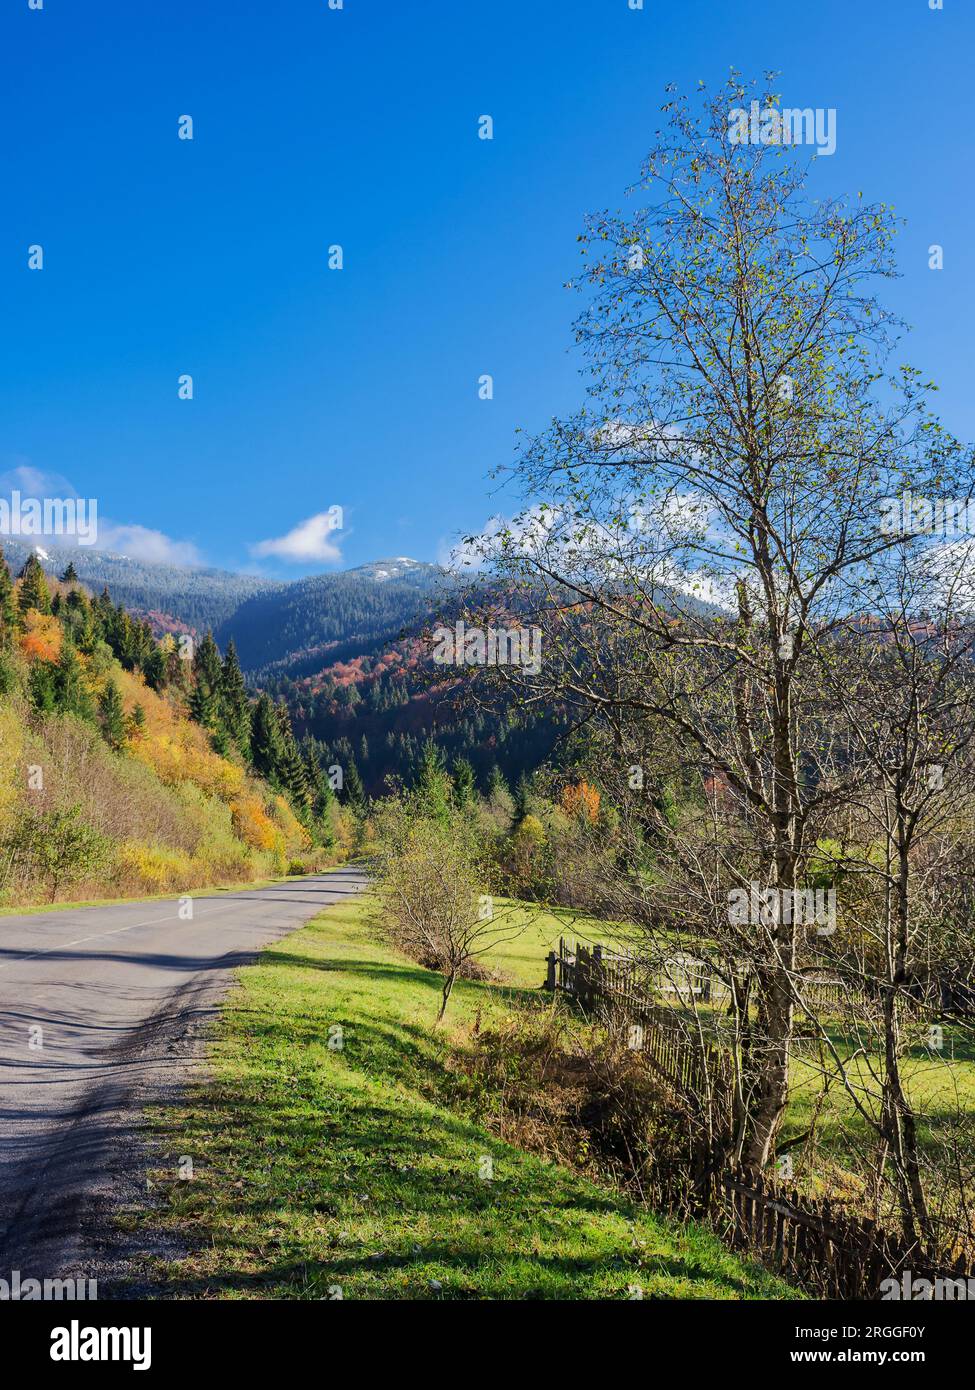 Asphaltstraße in karpaten. Reise durch die ukrainische Landschaft im Herbst. Bäume im Herbstlaub. Landschaften ländlicher Gebiete im Synevyr Park Stockfoto